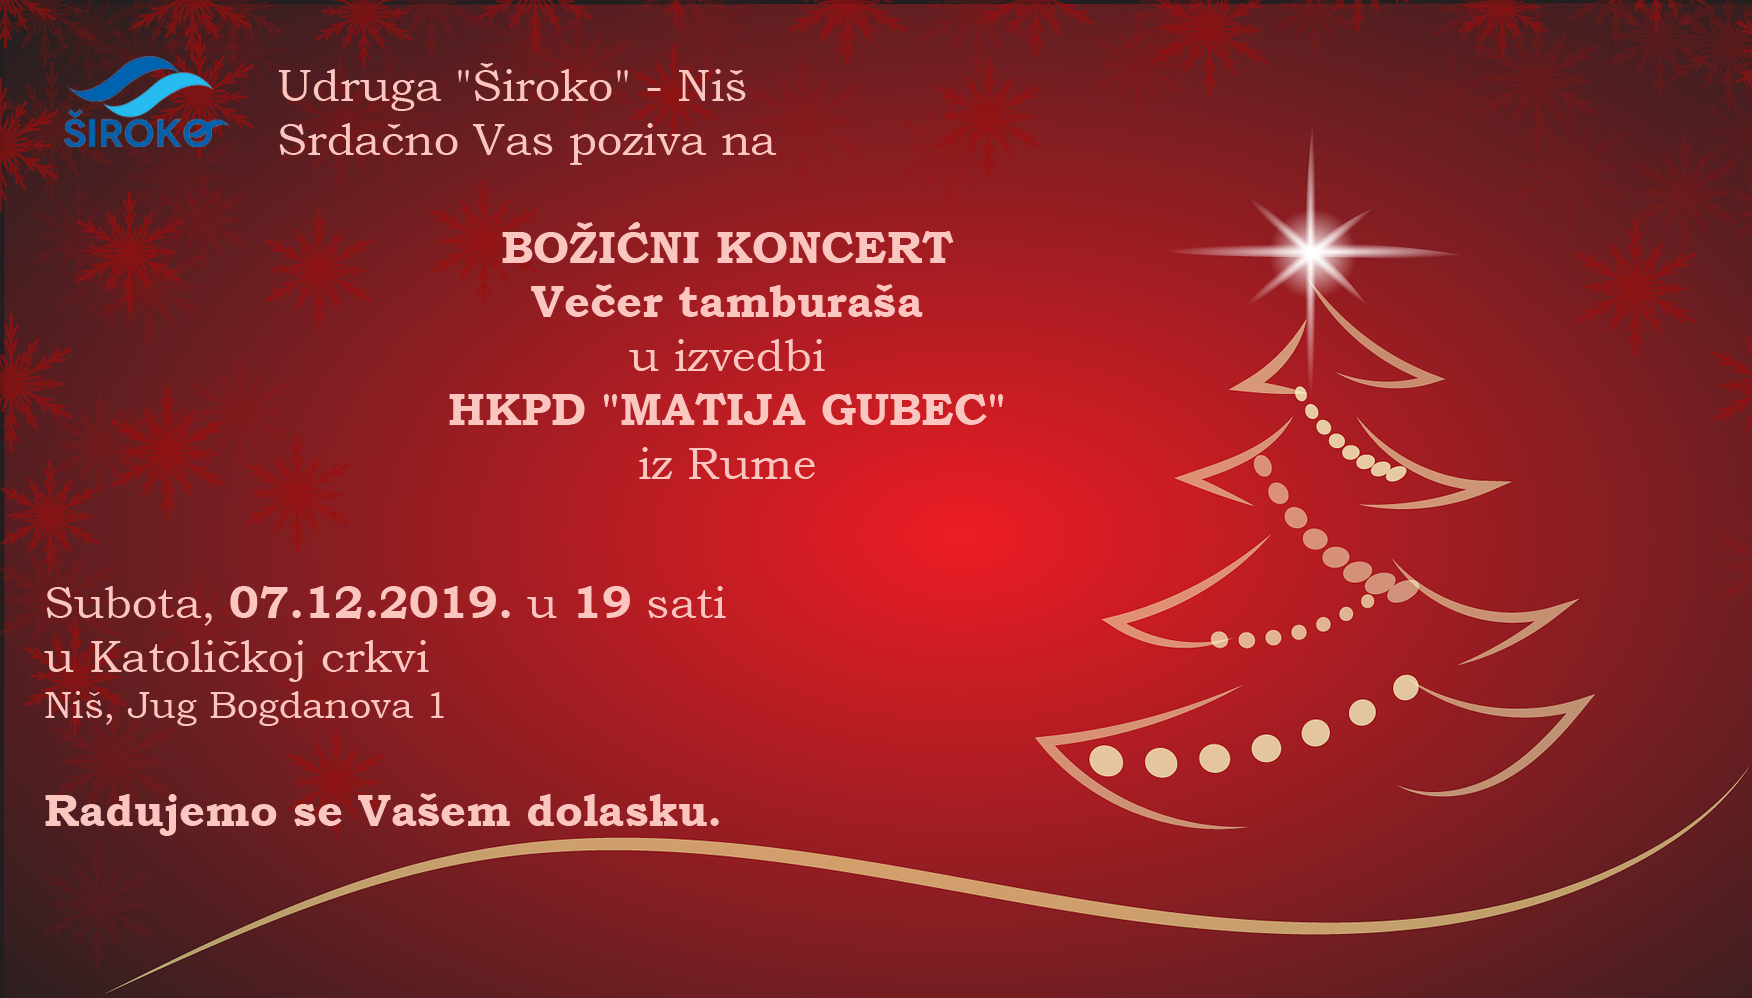 Bozicni koncert 2019 Široko Niš